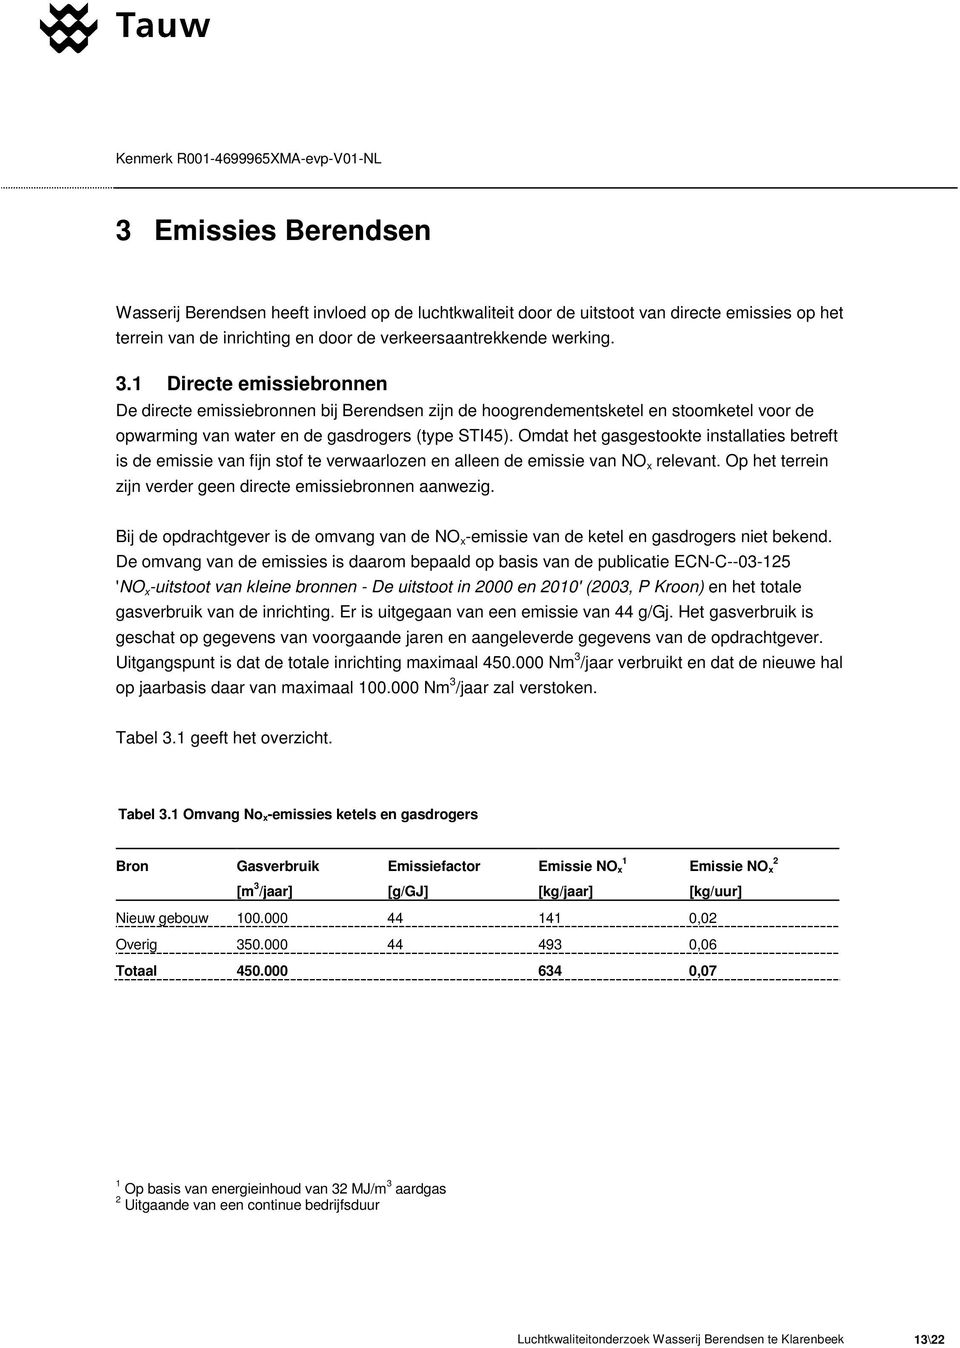 Omdat het gasgestookte installaties betreft is de emissie van fijn stof te verwaarlozen en alleen de emissie van NO x relevant. Op het terrein zijn verder geen directe emissiebronnen aanwezig.